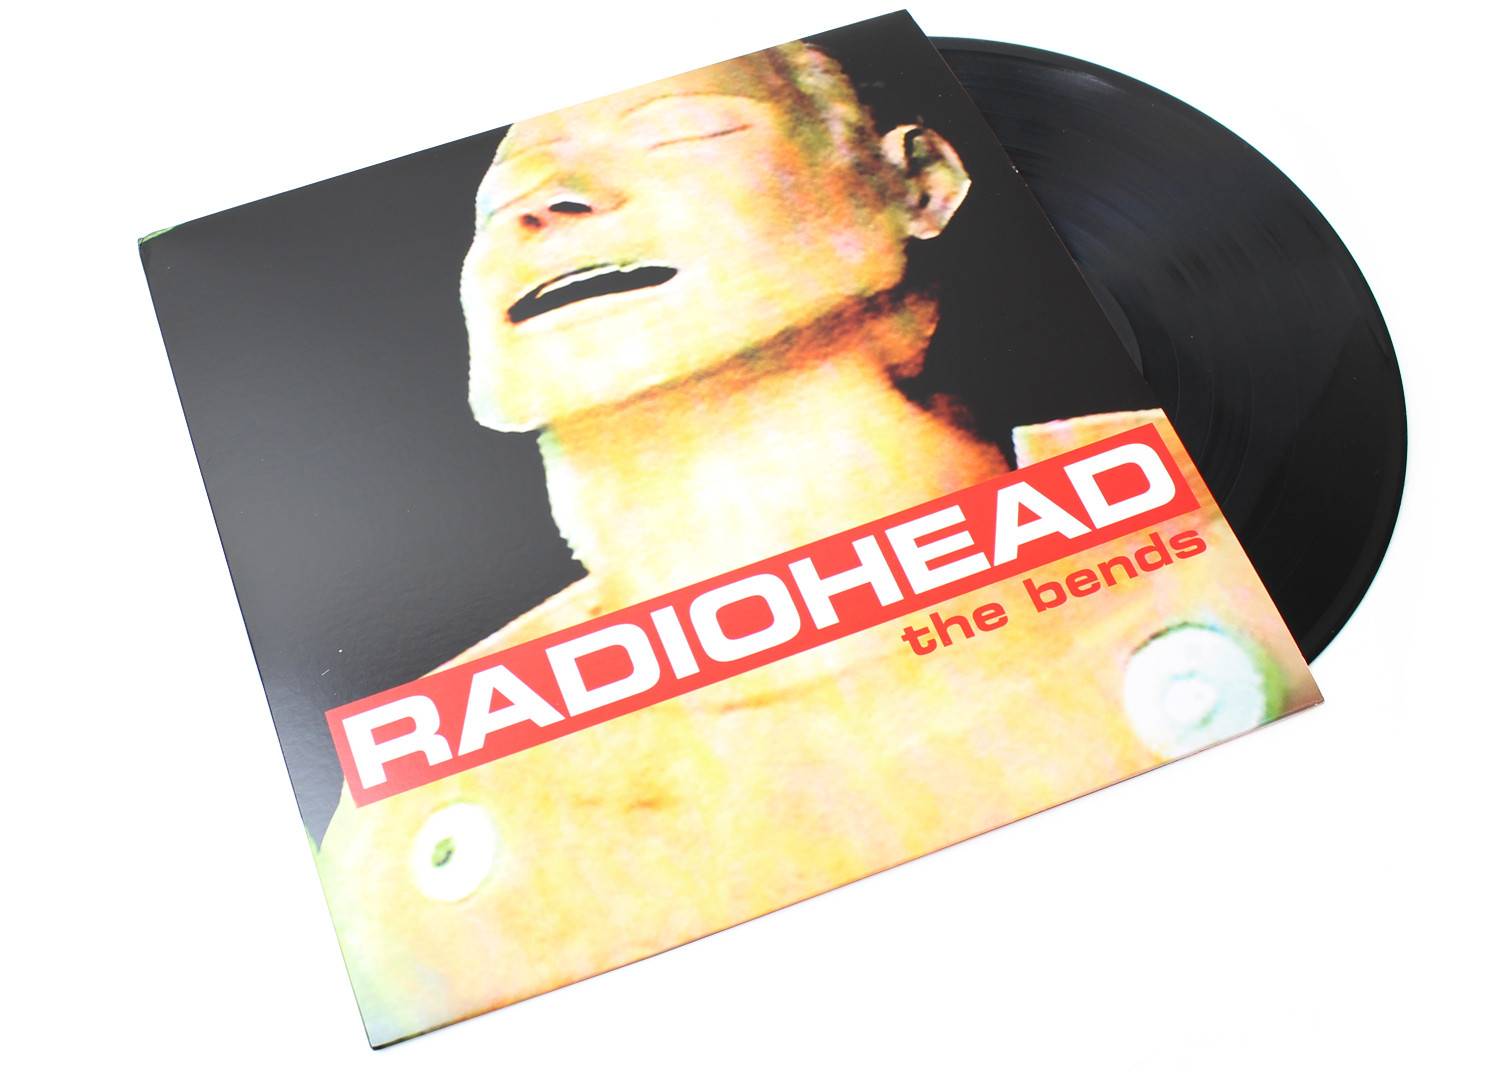 -Radiohead The Bends Vinyl Album